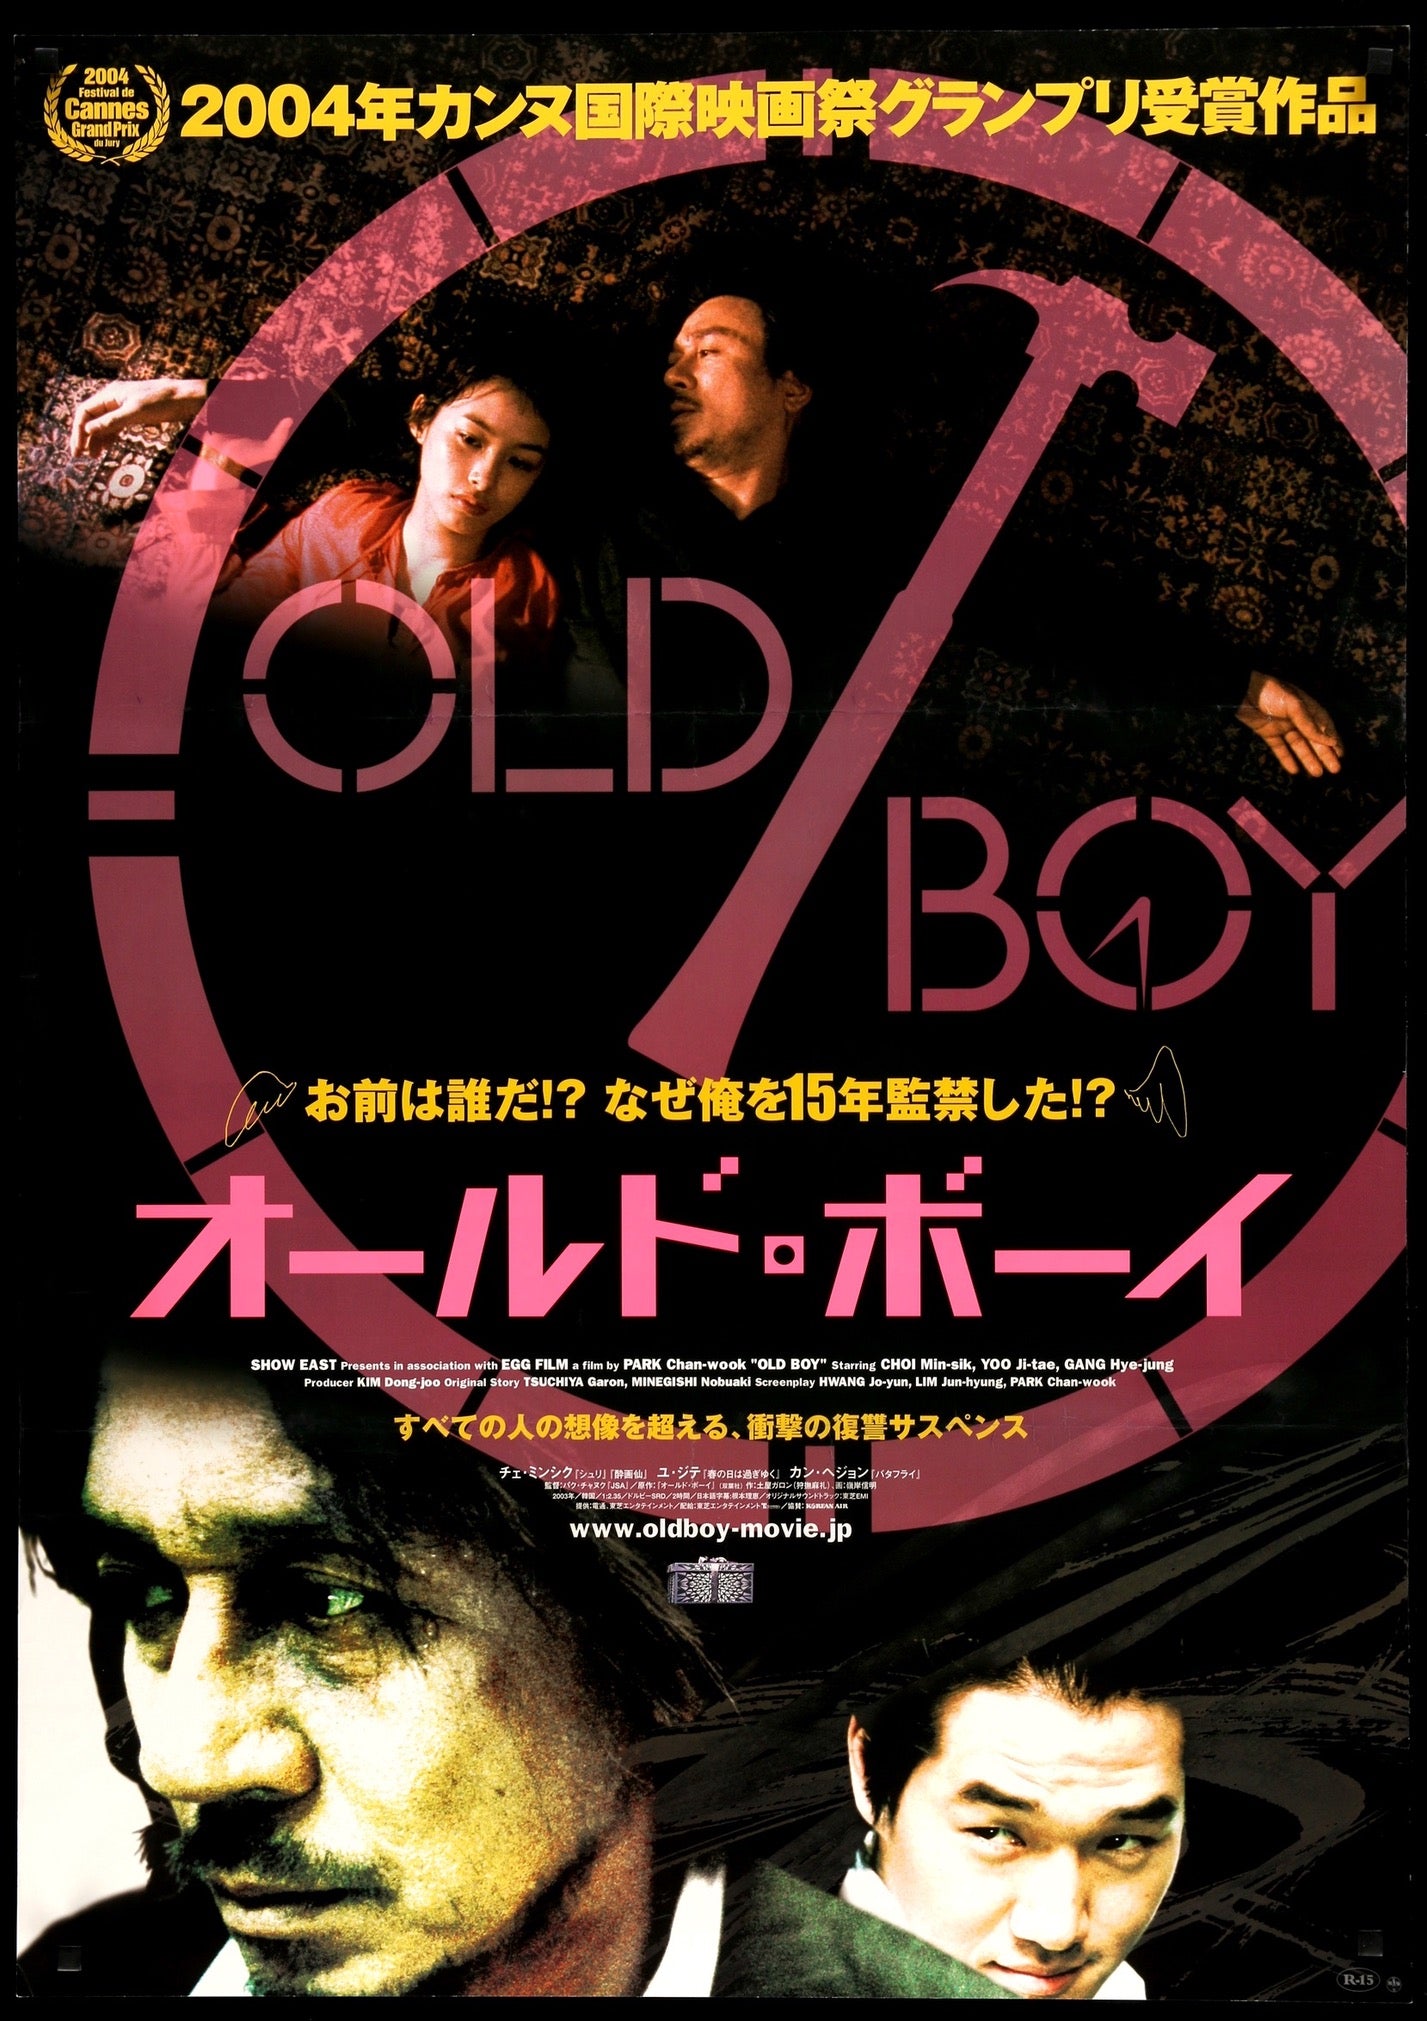 2003 Oldboy